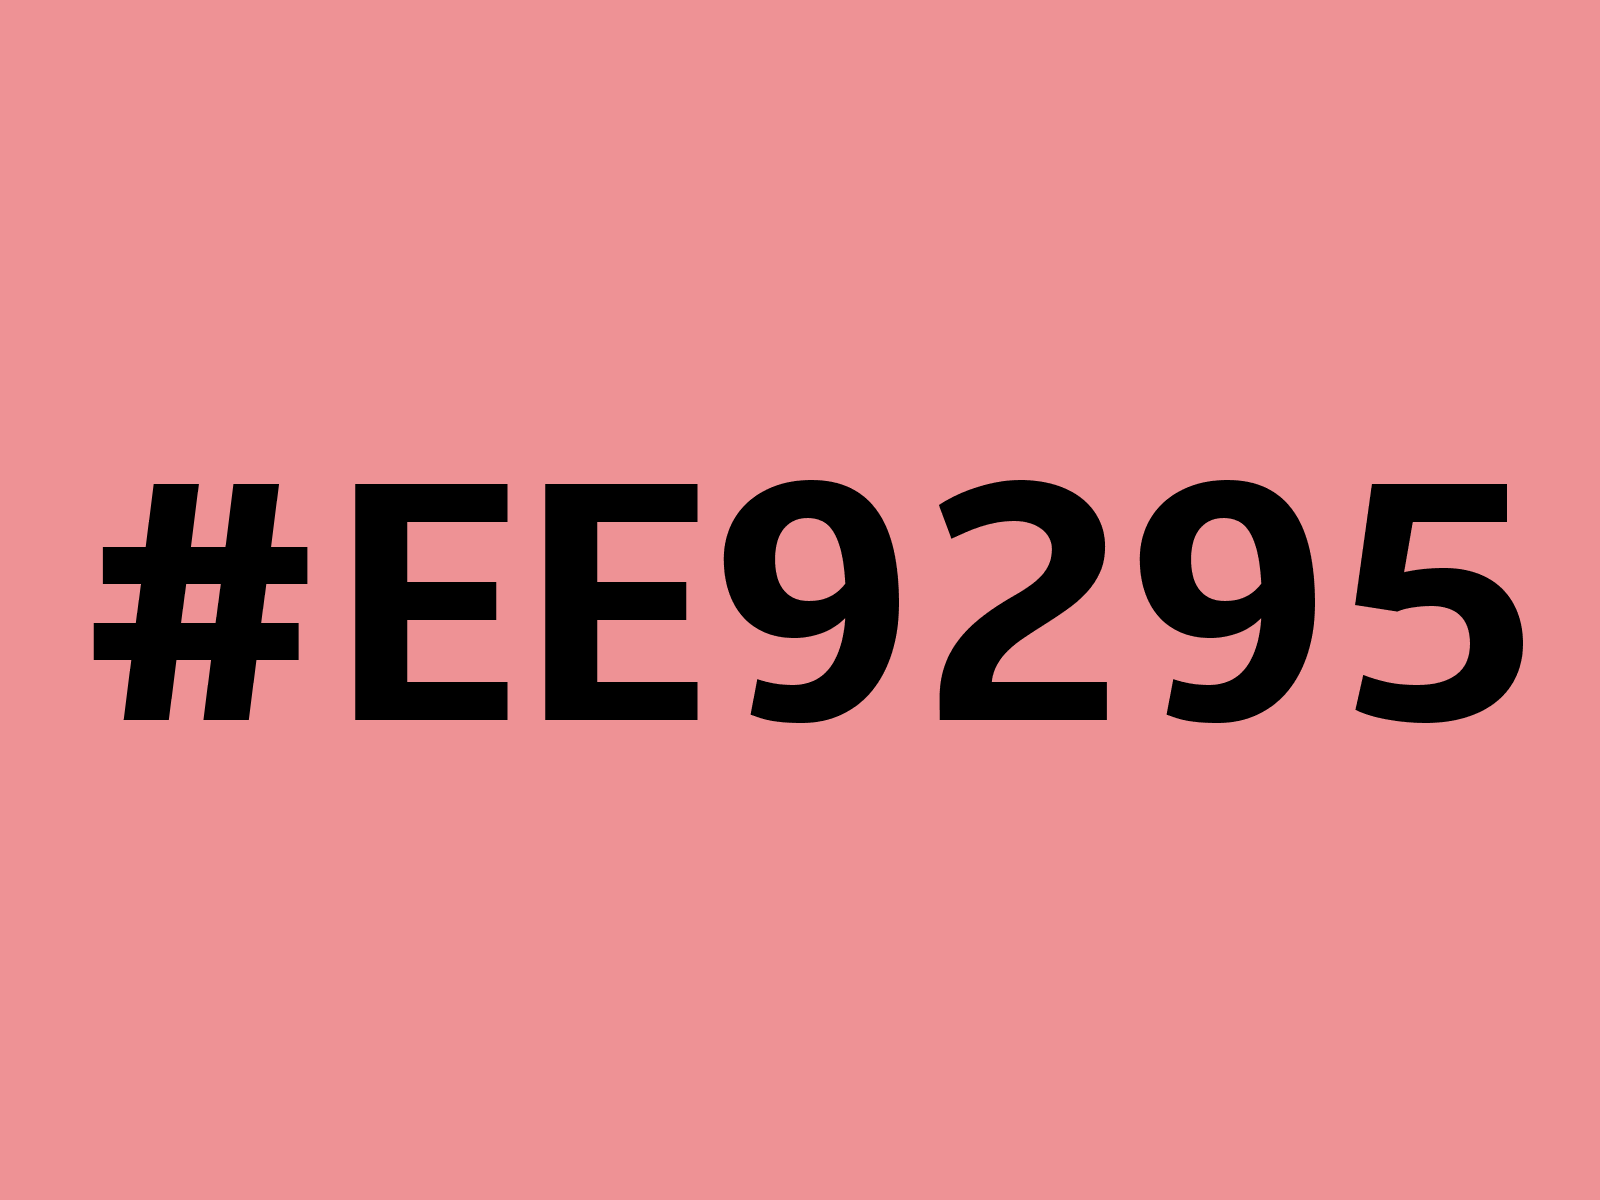 ee9295